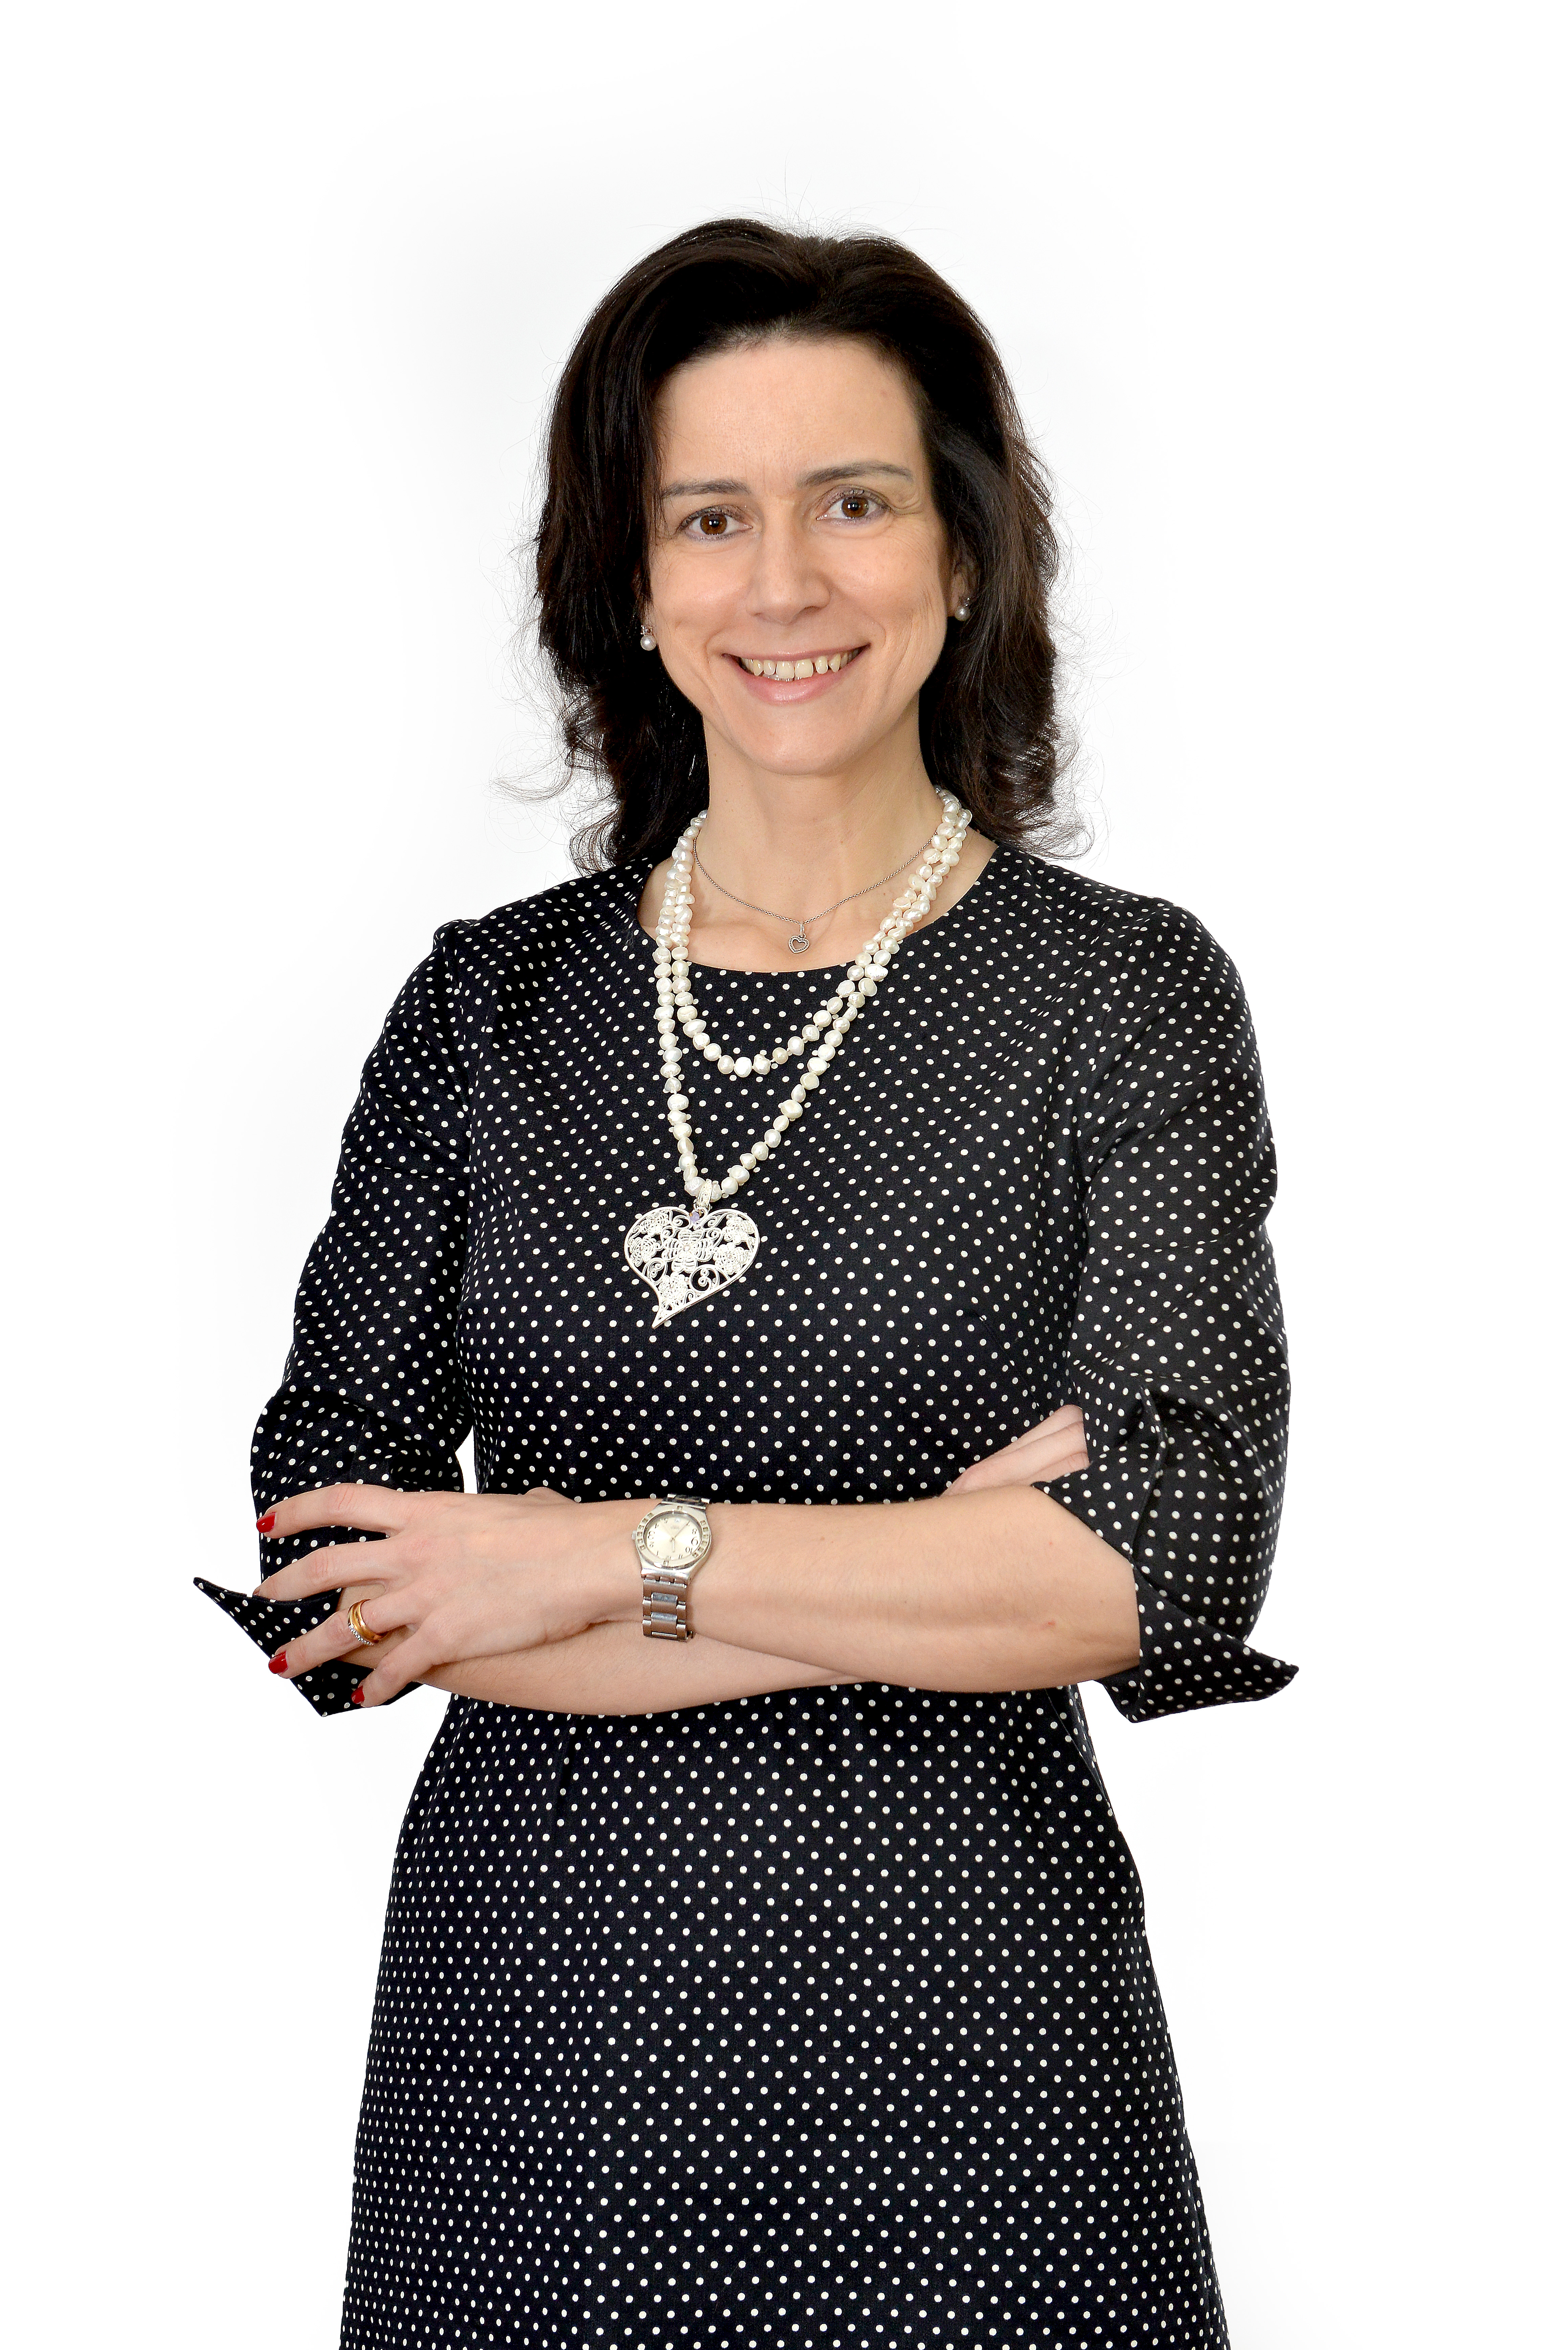 Filipa Fixe, administradora e diretora do mercado de healthcare da Glintt